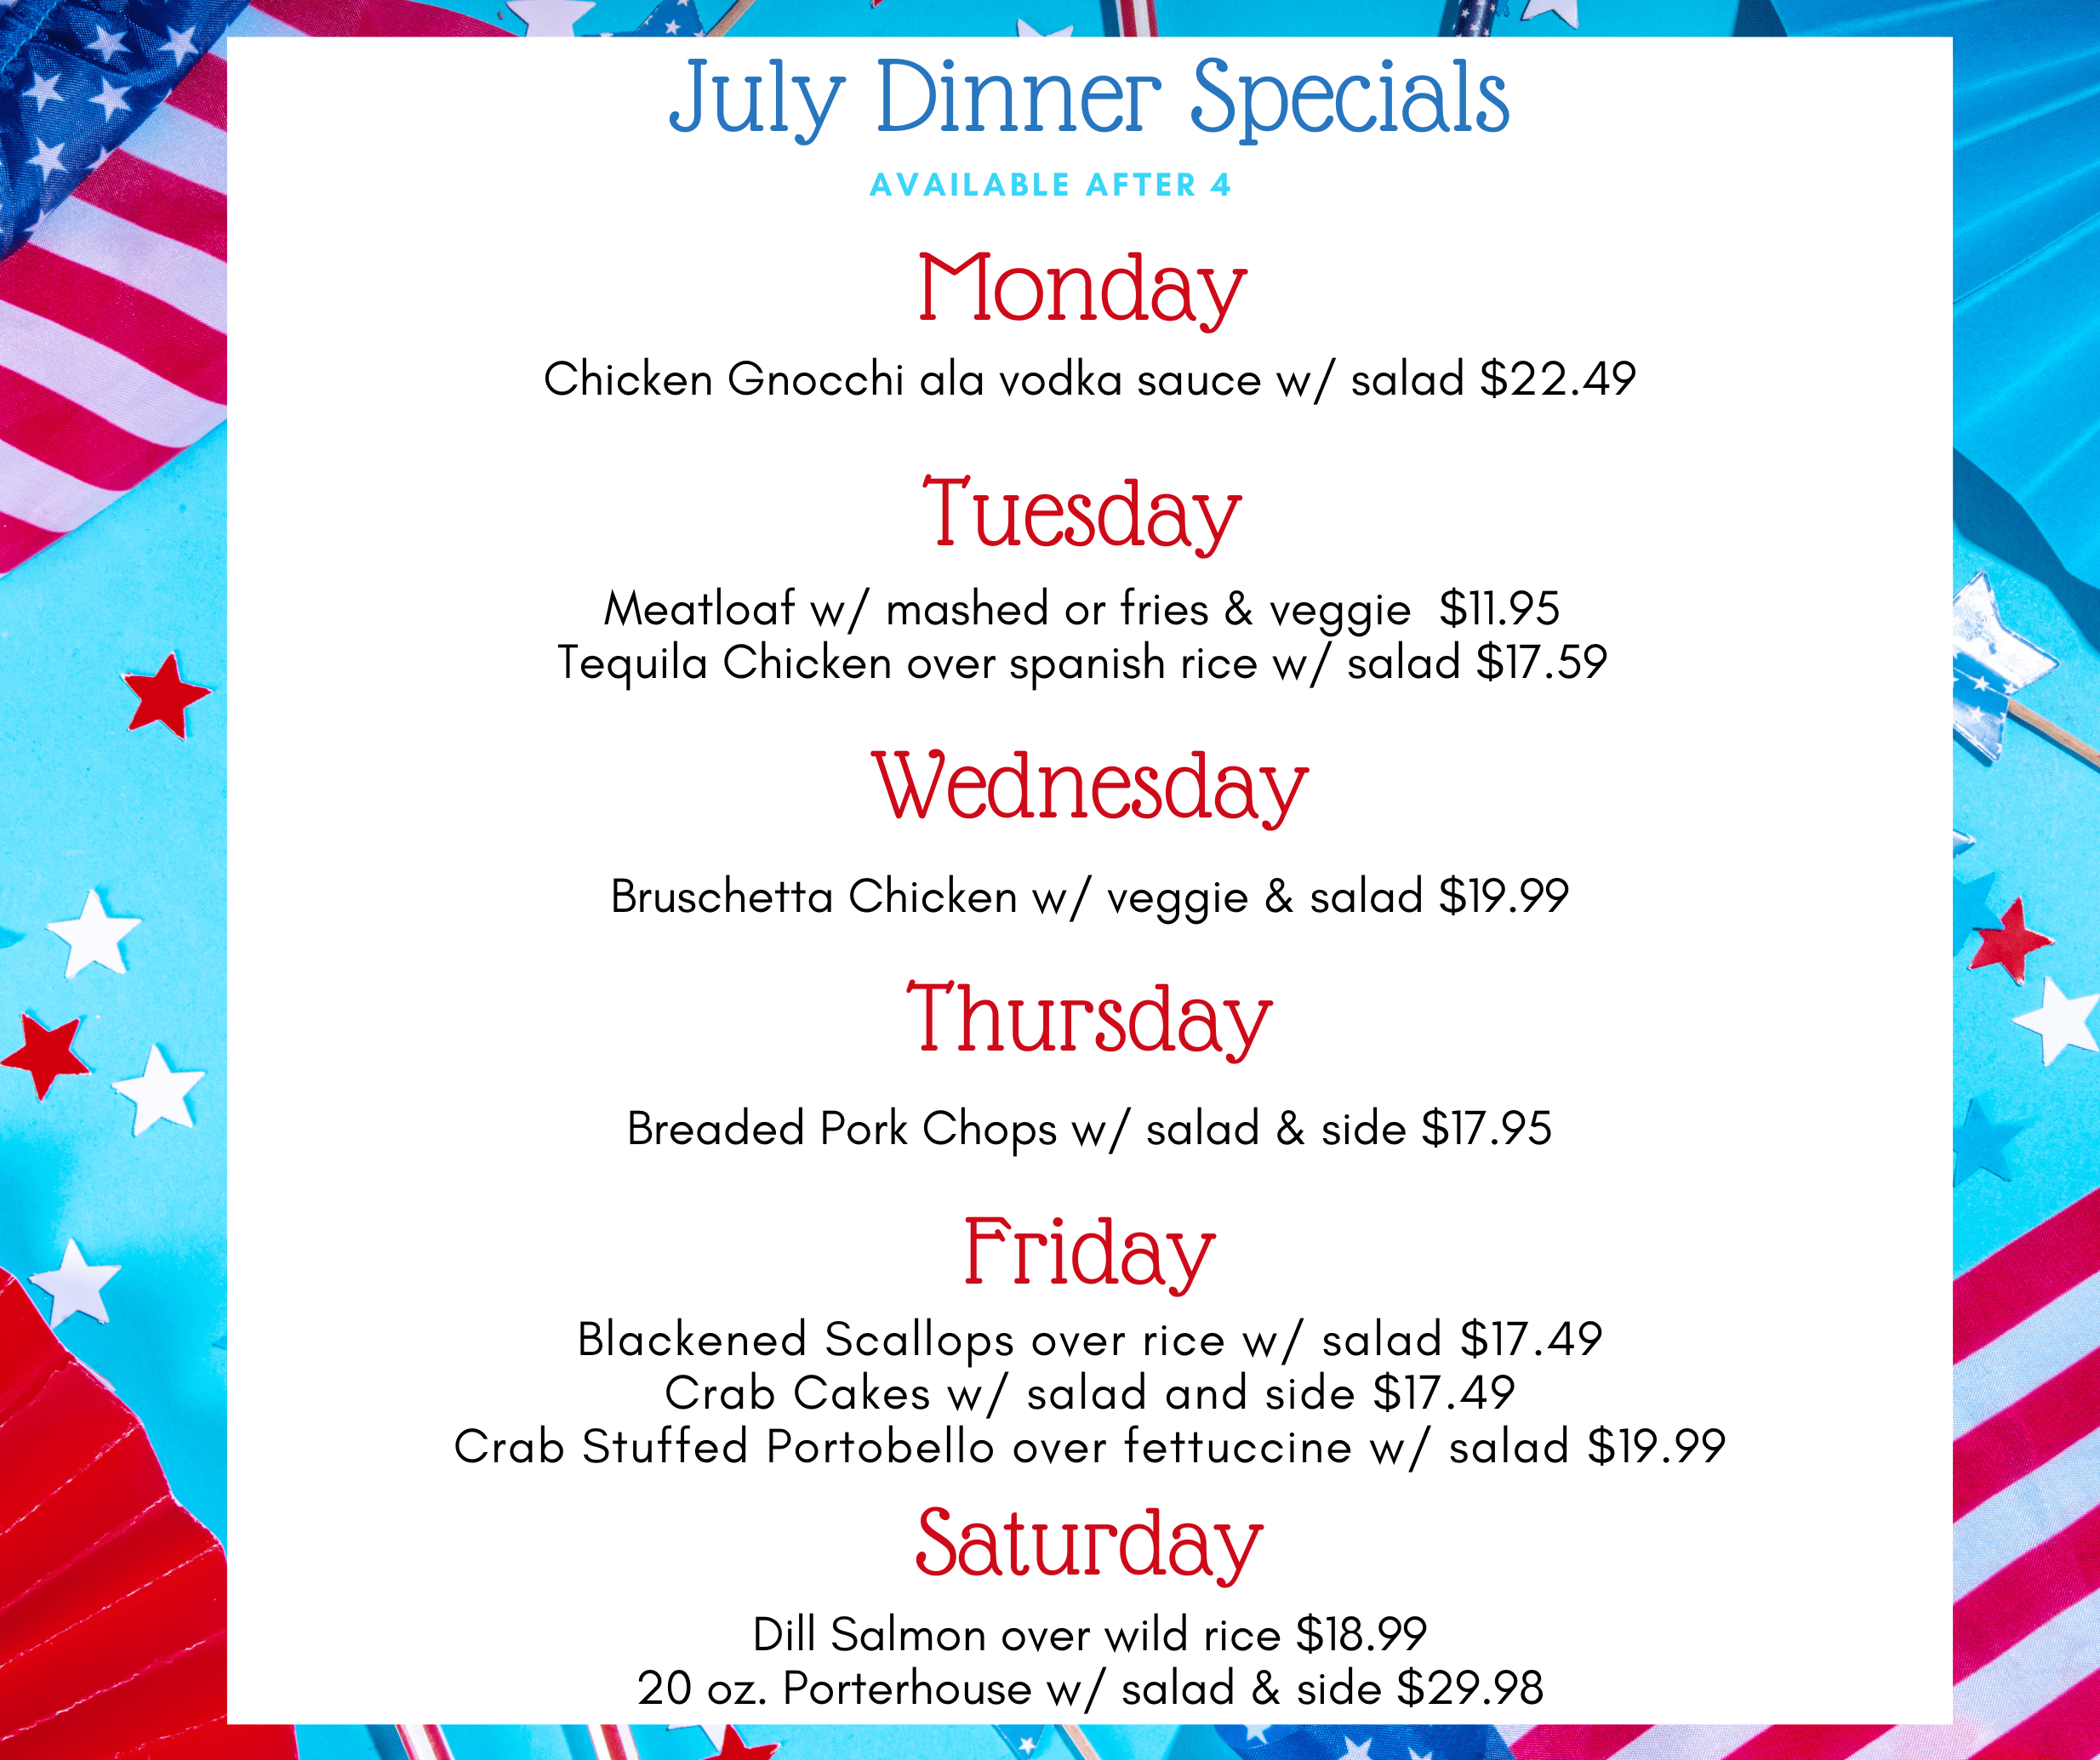 July Dinner Specials